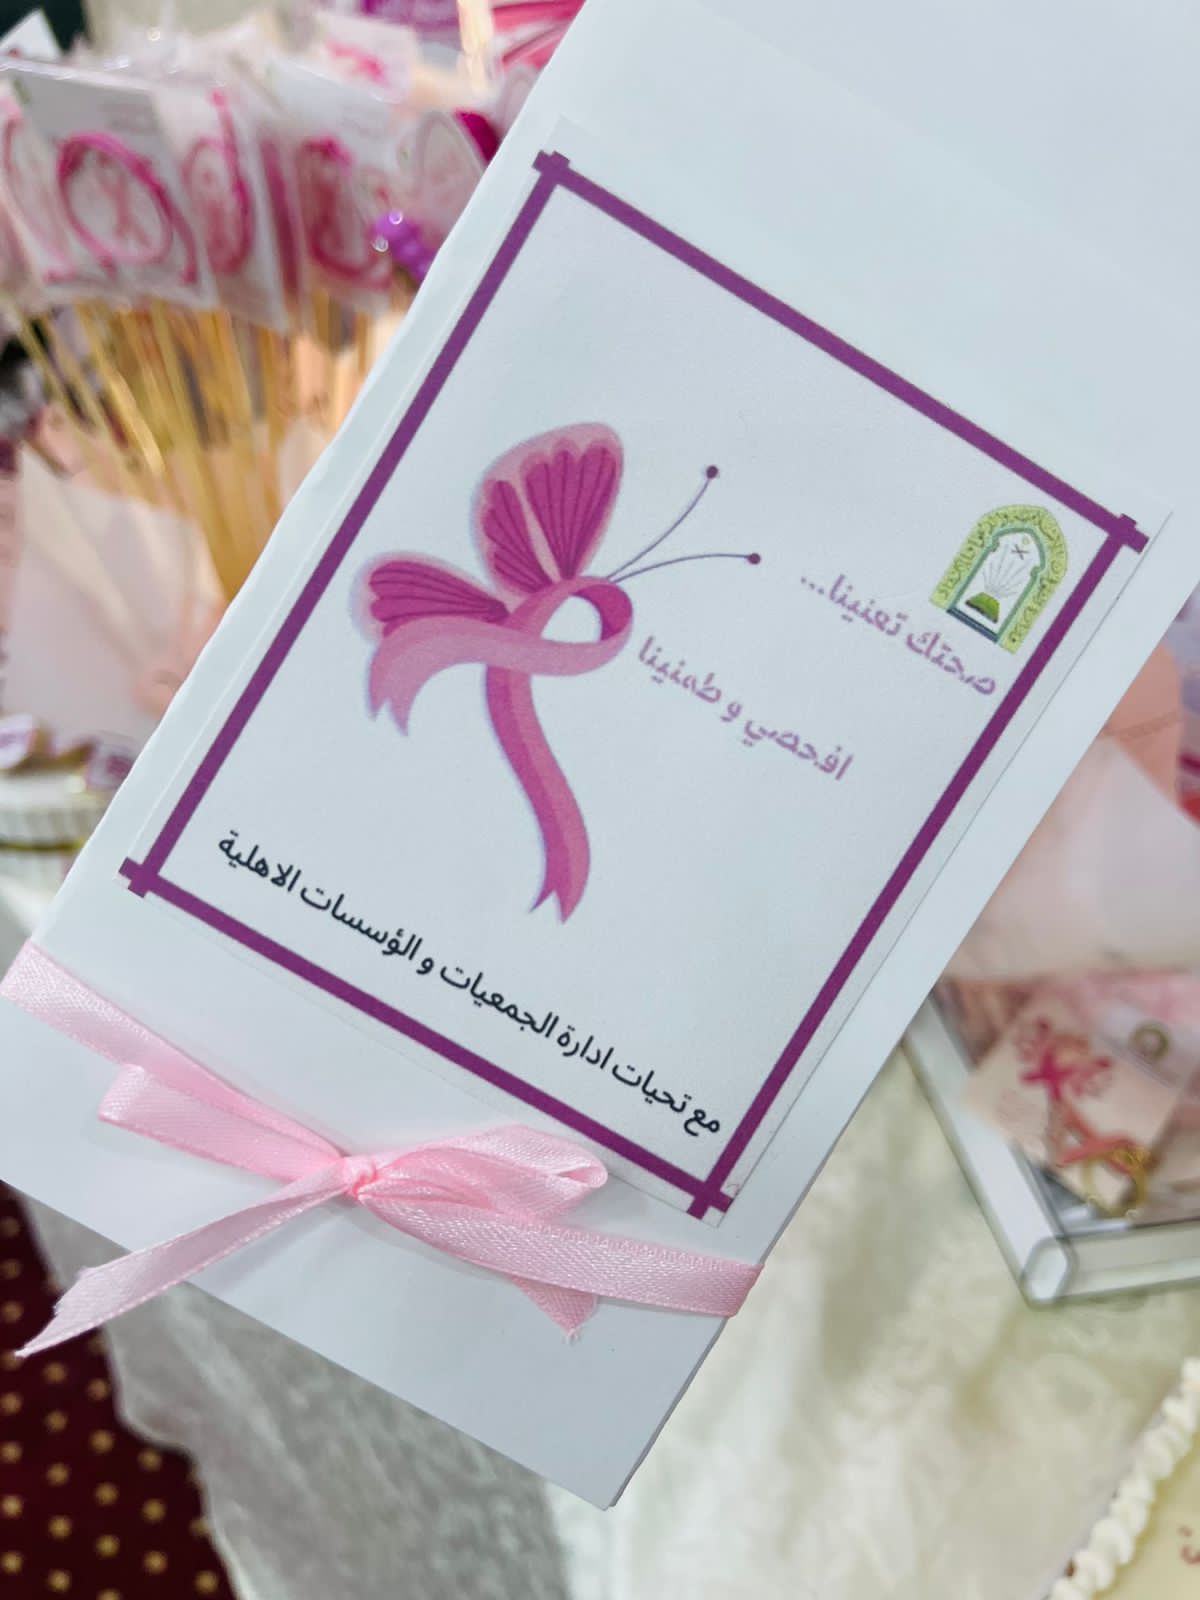 إسلامية جازان تقيم مبادرة توعوية بالتزامن مع شهر التوعية بسرطان الثدي 